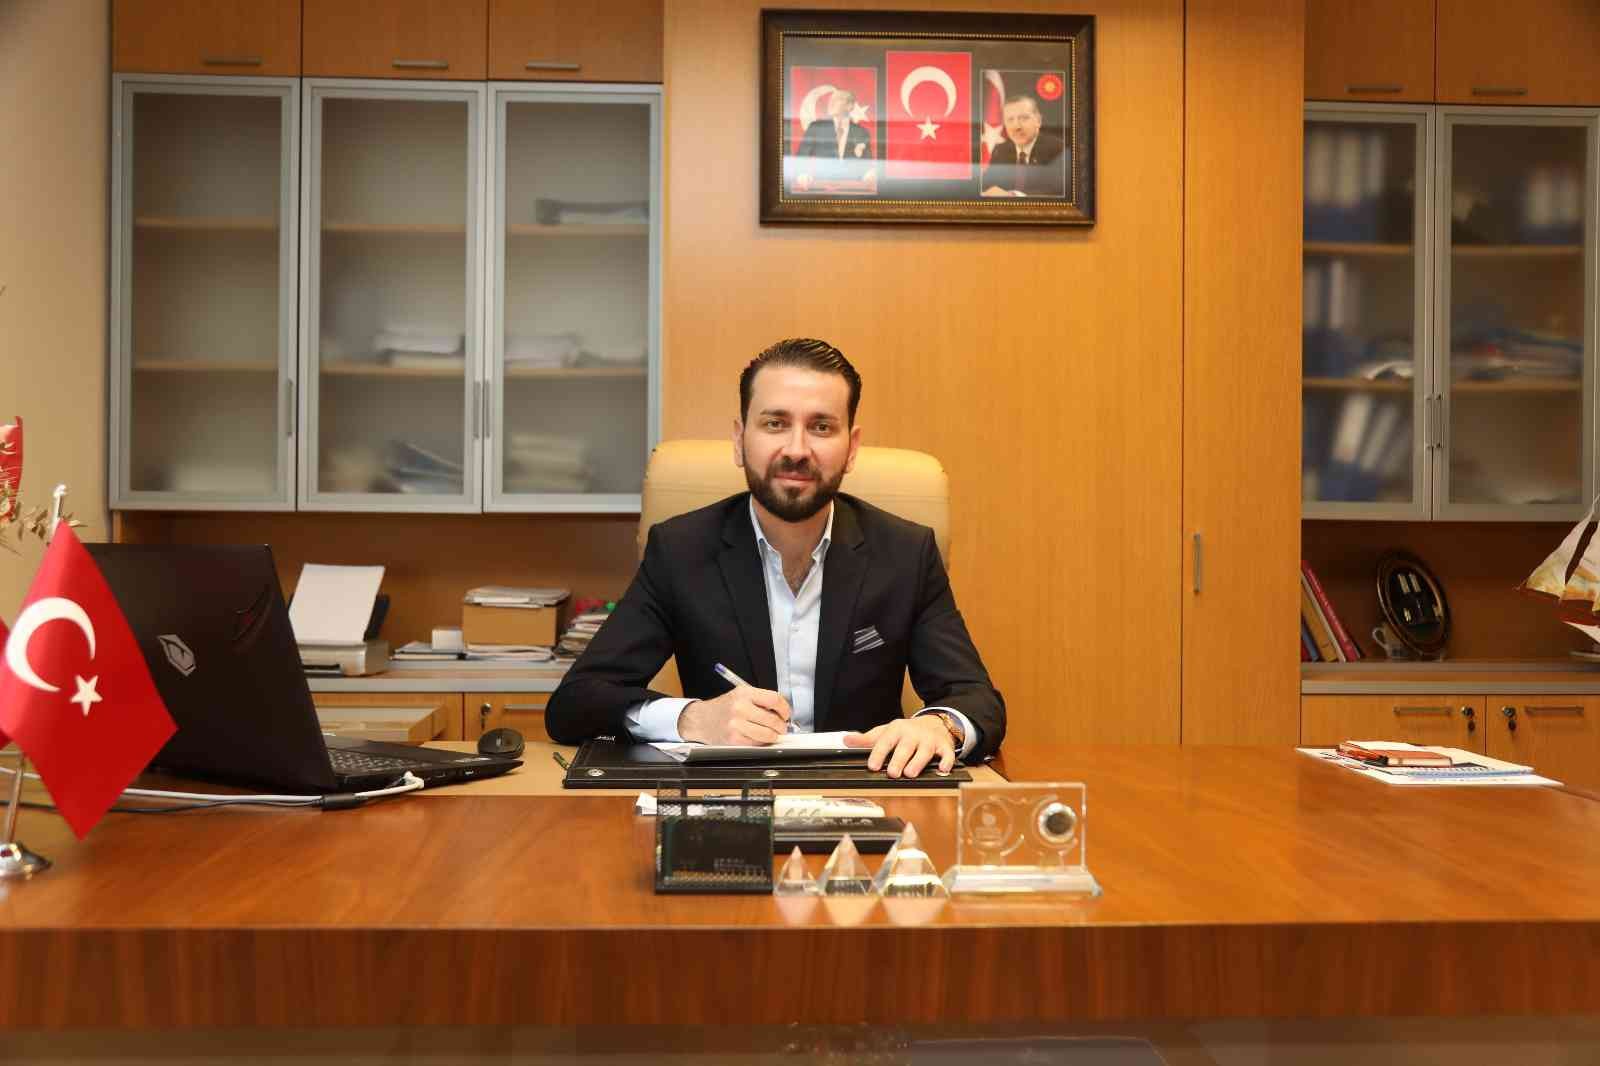 Darıca Belediyesi’nde yeni başkan yardımcısı görevine başladı #kocaeli